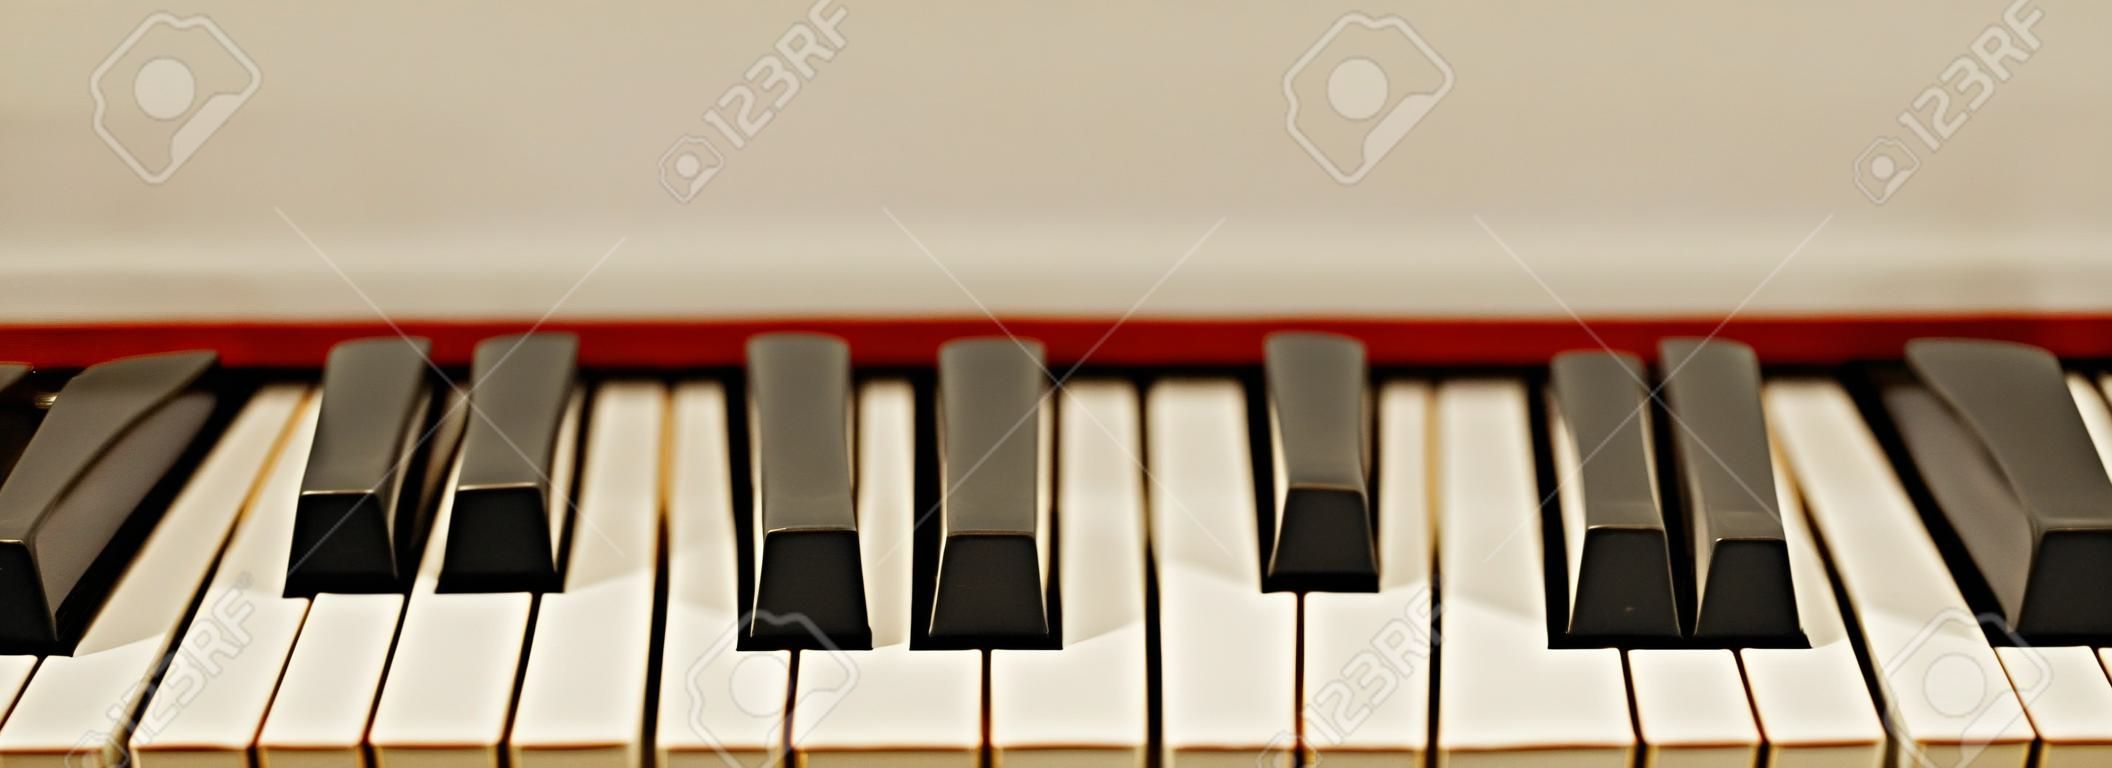 Das melodischste Musikinstrument. Nahaufnahme von schwarzen und weißen Klaviertasten. Musikkonzept